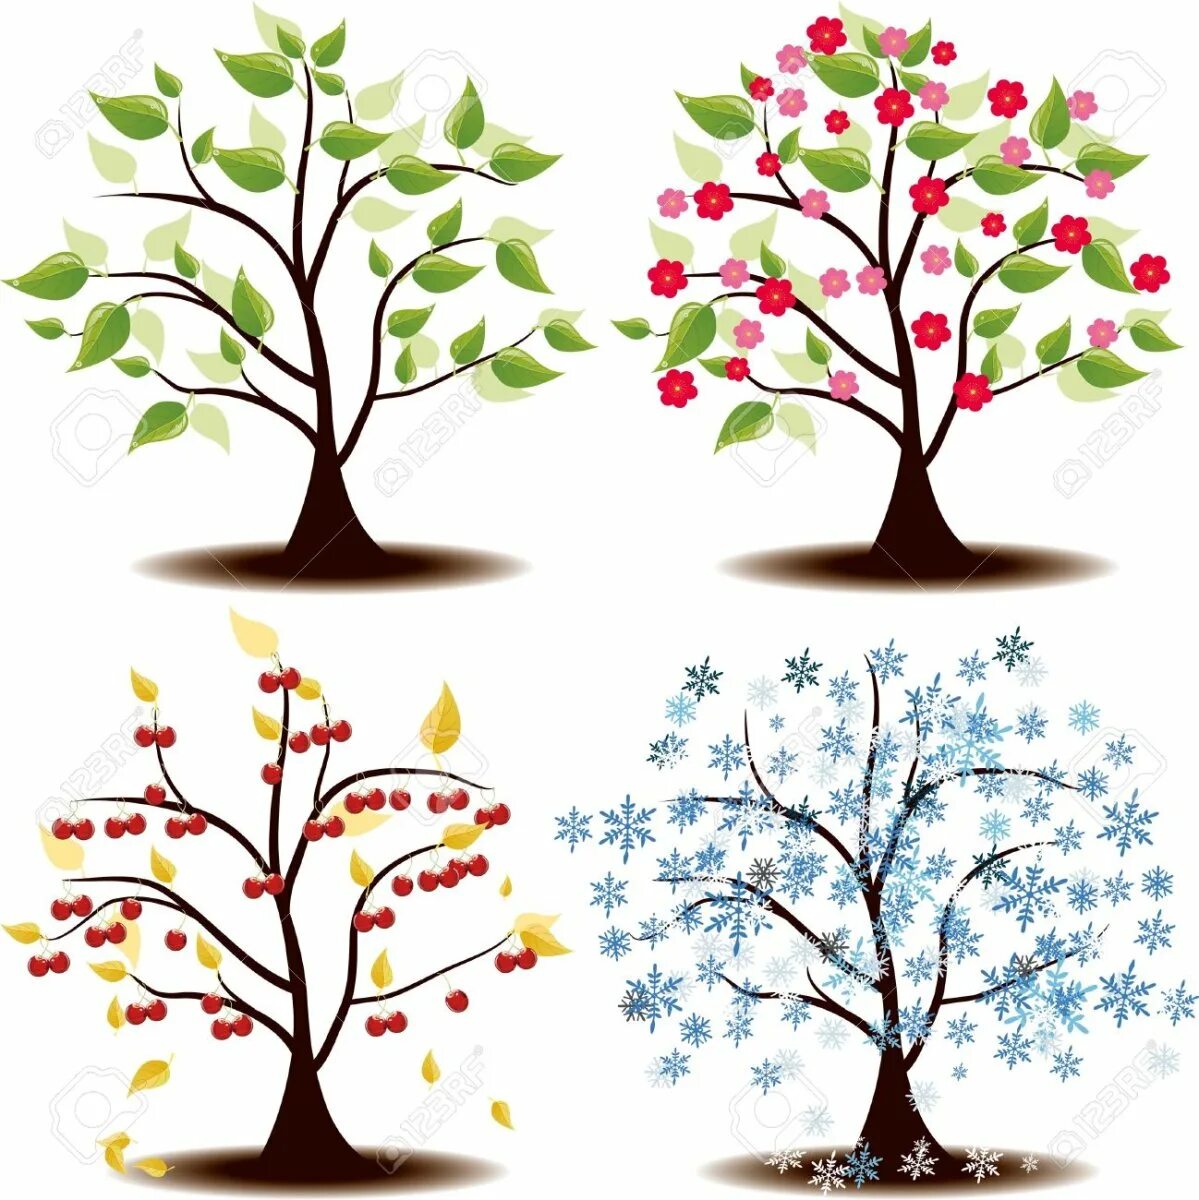 Яблоня в разные времена года. Дерево вишни во все времена года. Яблоня весной летом осенью и зимой. Вишня дерево рисунок.